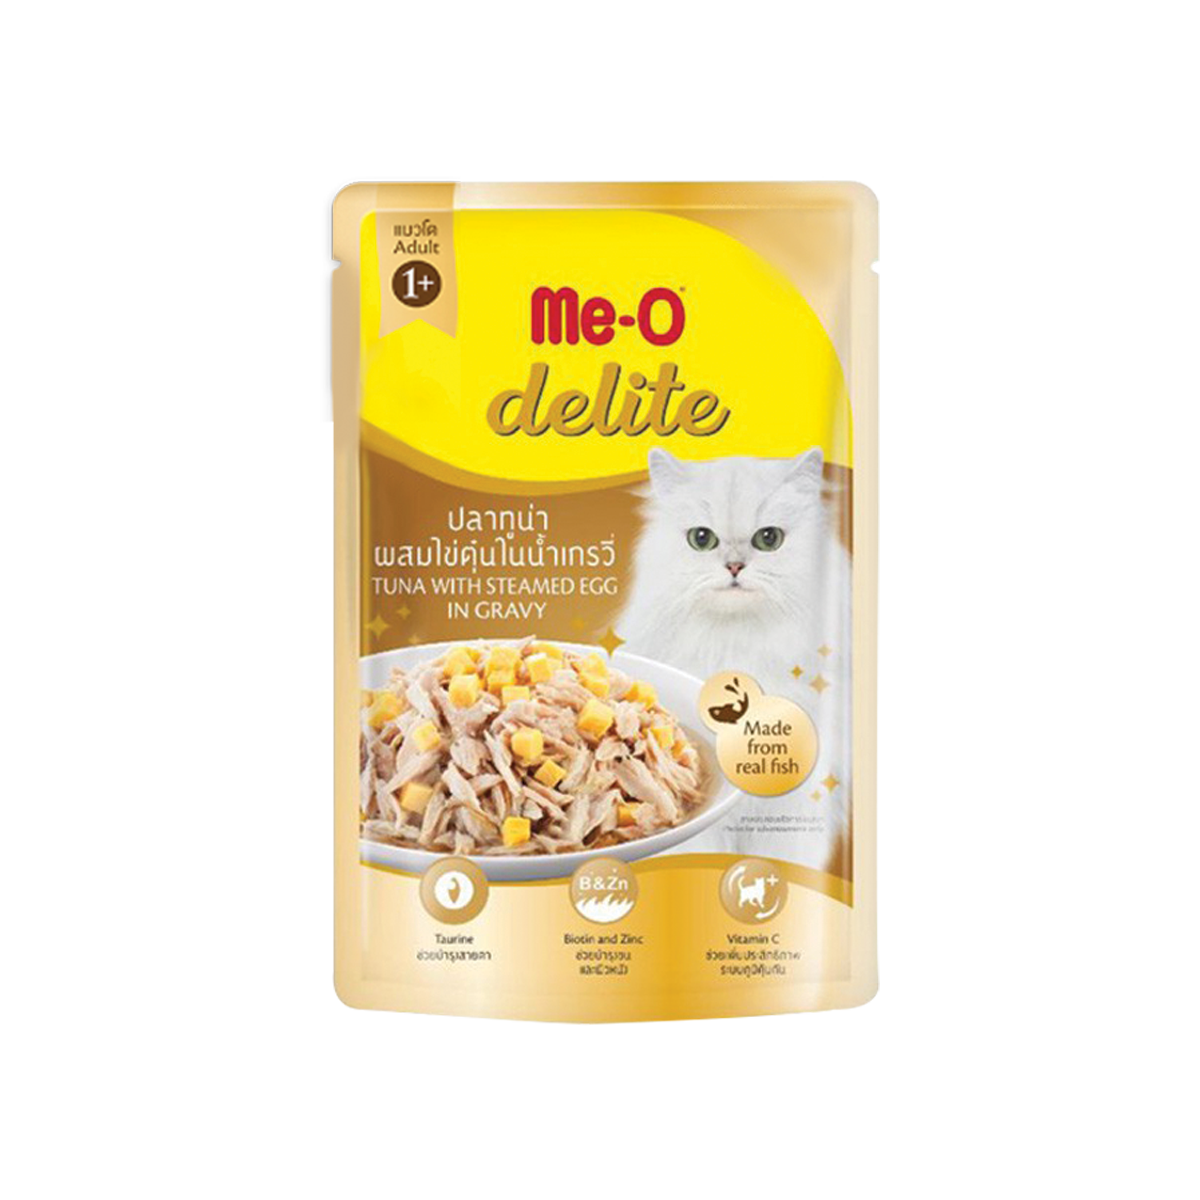 Me-O Delite มีโอ ดีไลท์ อาหารเปียกแมว แบบซอง รส ปลาทูน่าผสมไข่ตุ๋นในน้ำเกรวี่ ขนาด 70 กรัม